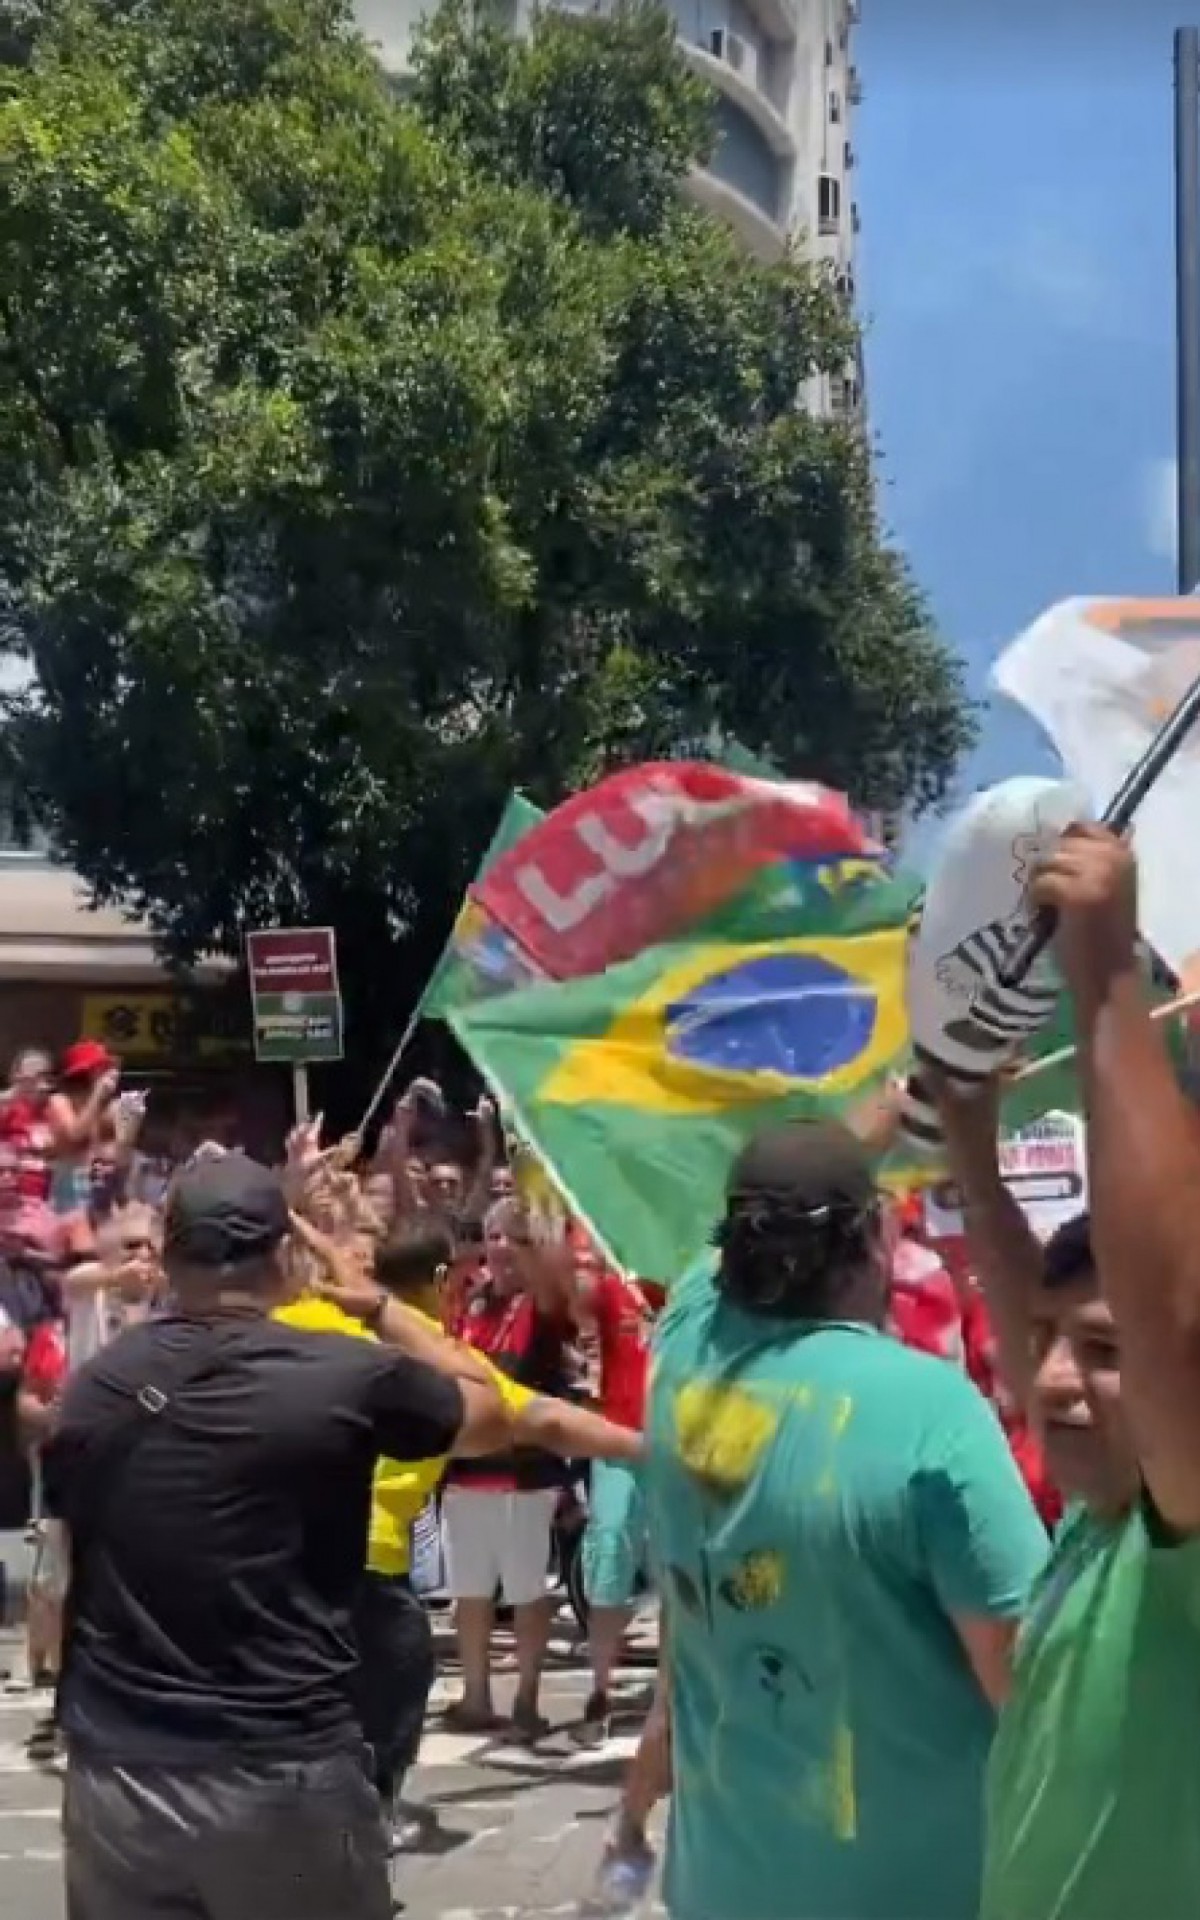 Apoiadores de Lula e Bolsonaro entraram em confronto na tarde deste sábado (29), na Praça Saens Peña, no bairro da Tijuca, na Zona Norte - Reprodução / Instagram